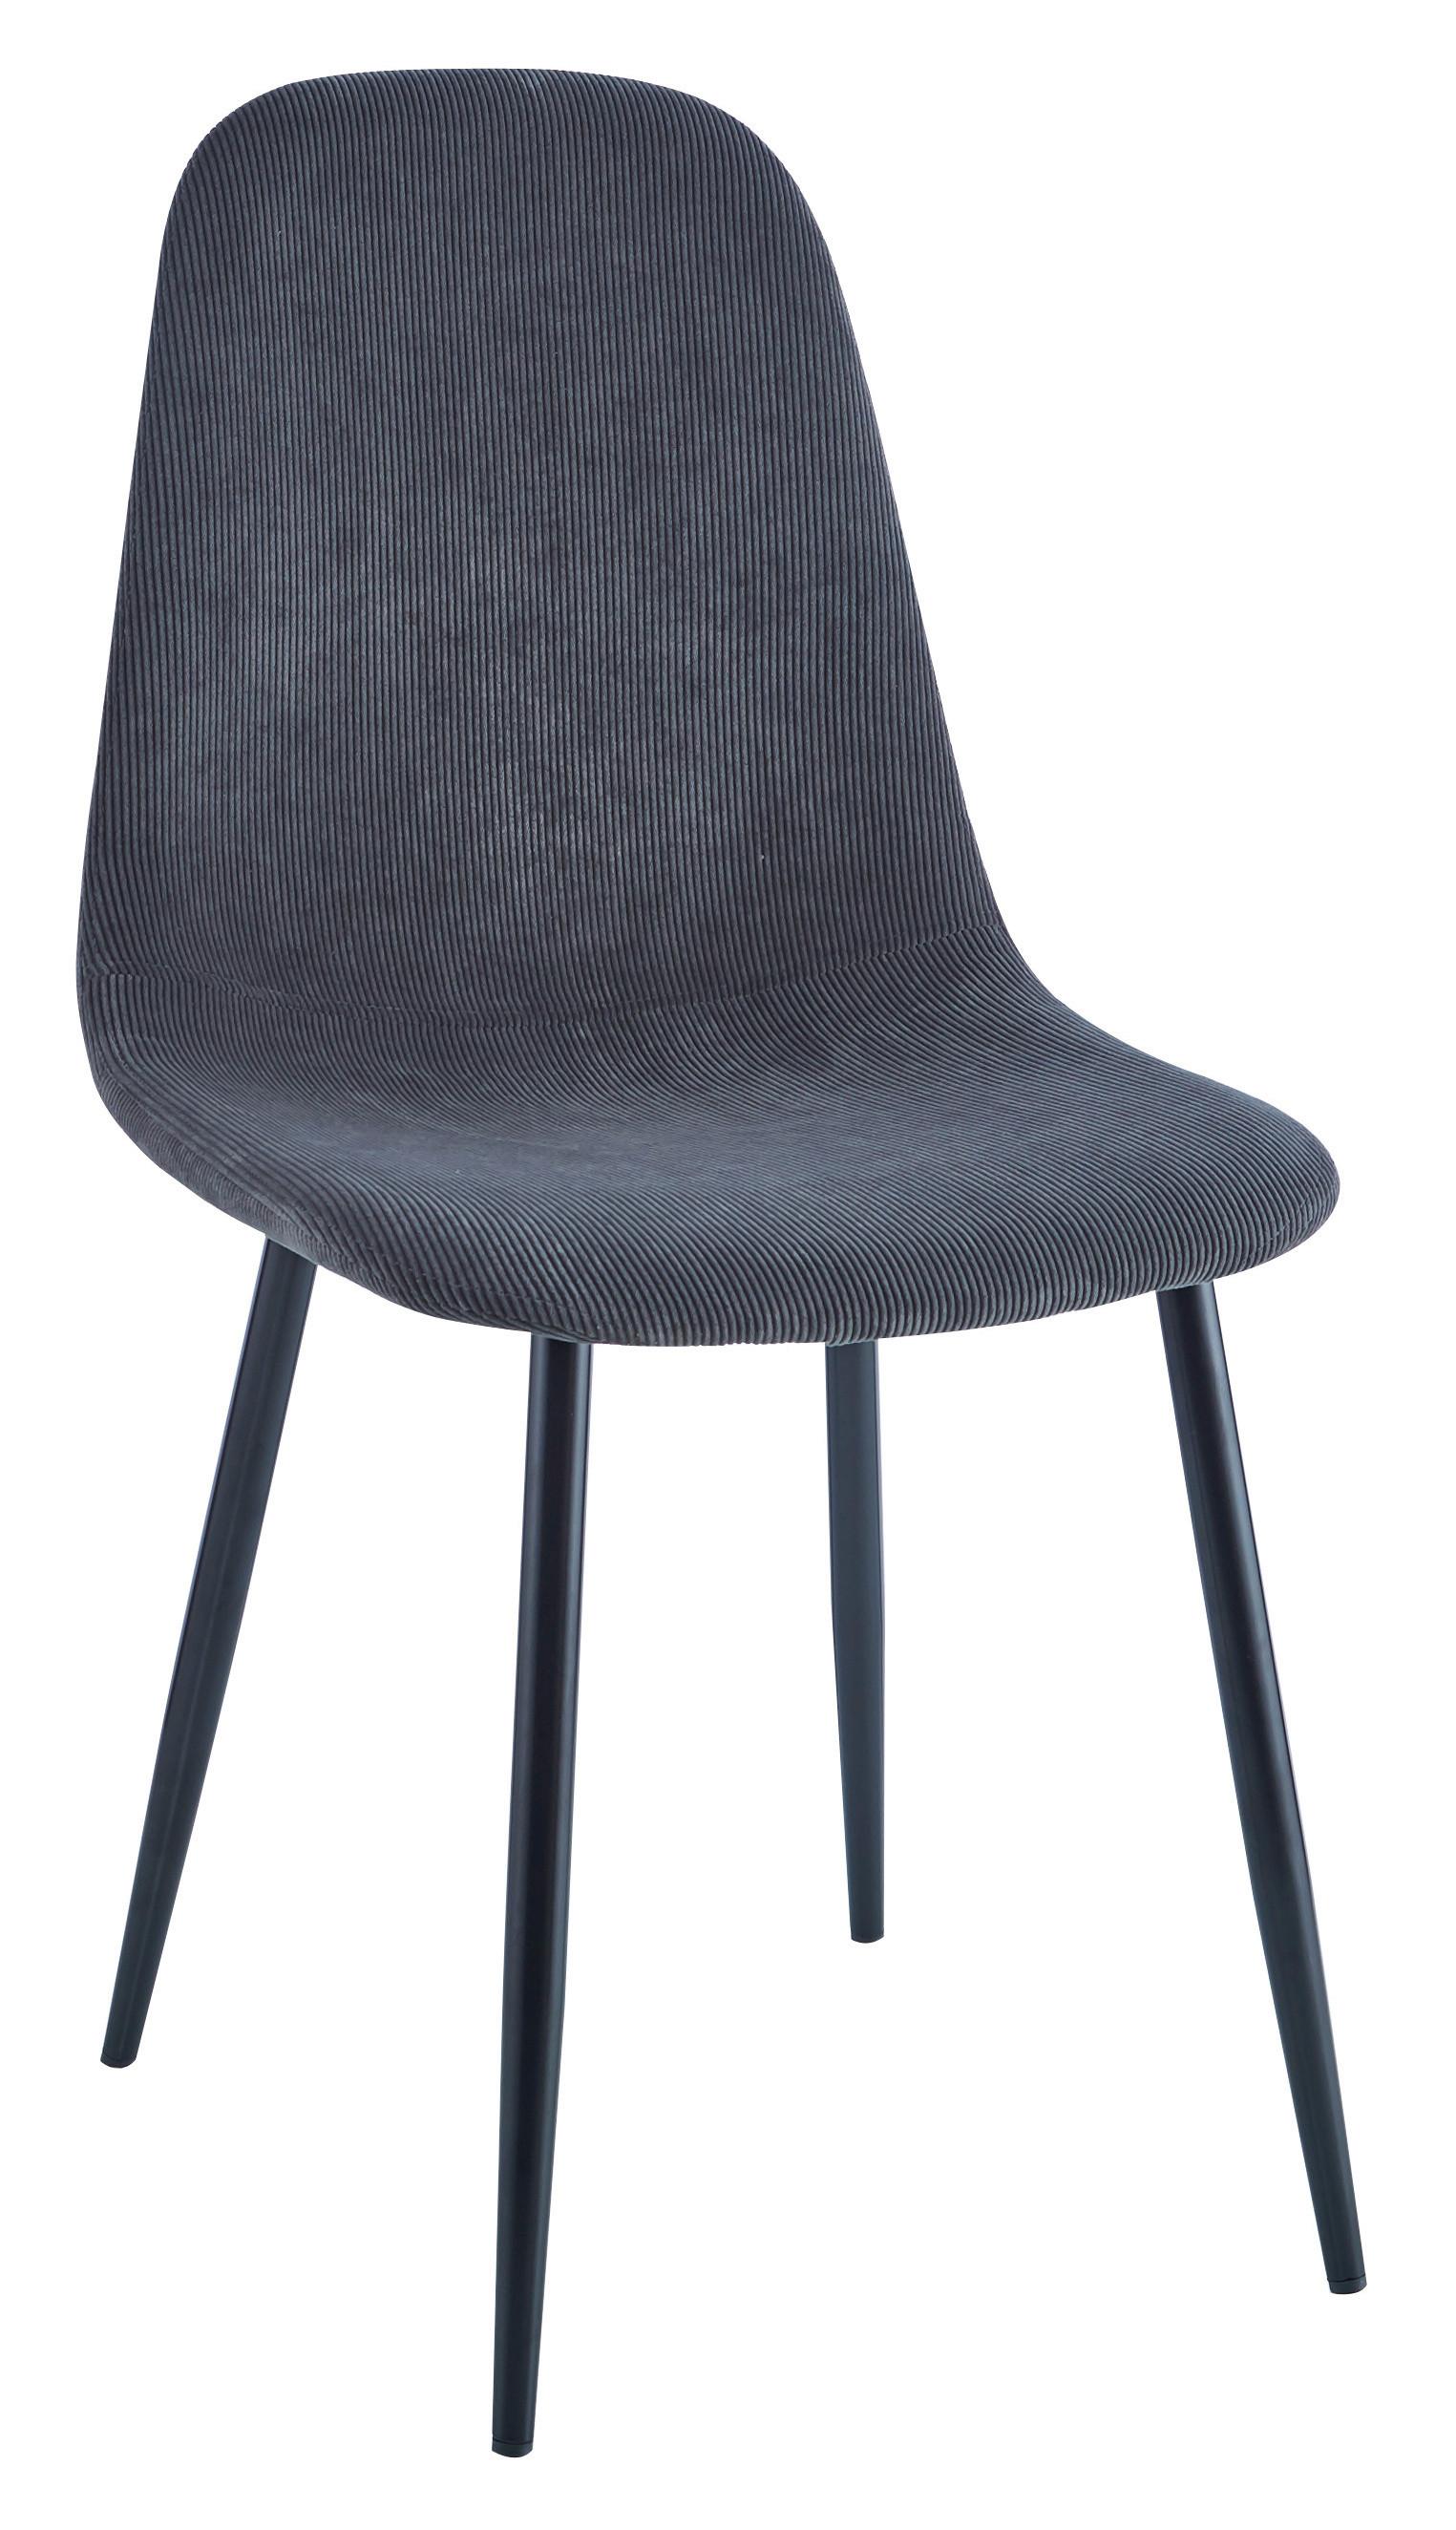 Jídelní Židle Cordula, Šedá - šedá/černá, Moderní, kov/textil (44,5/86,5/54cm) - Modern Living